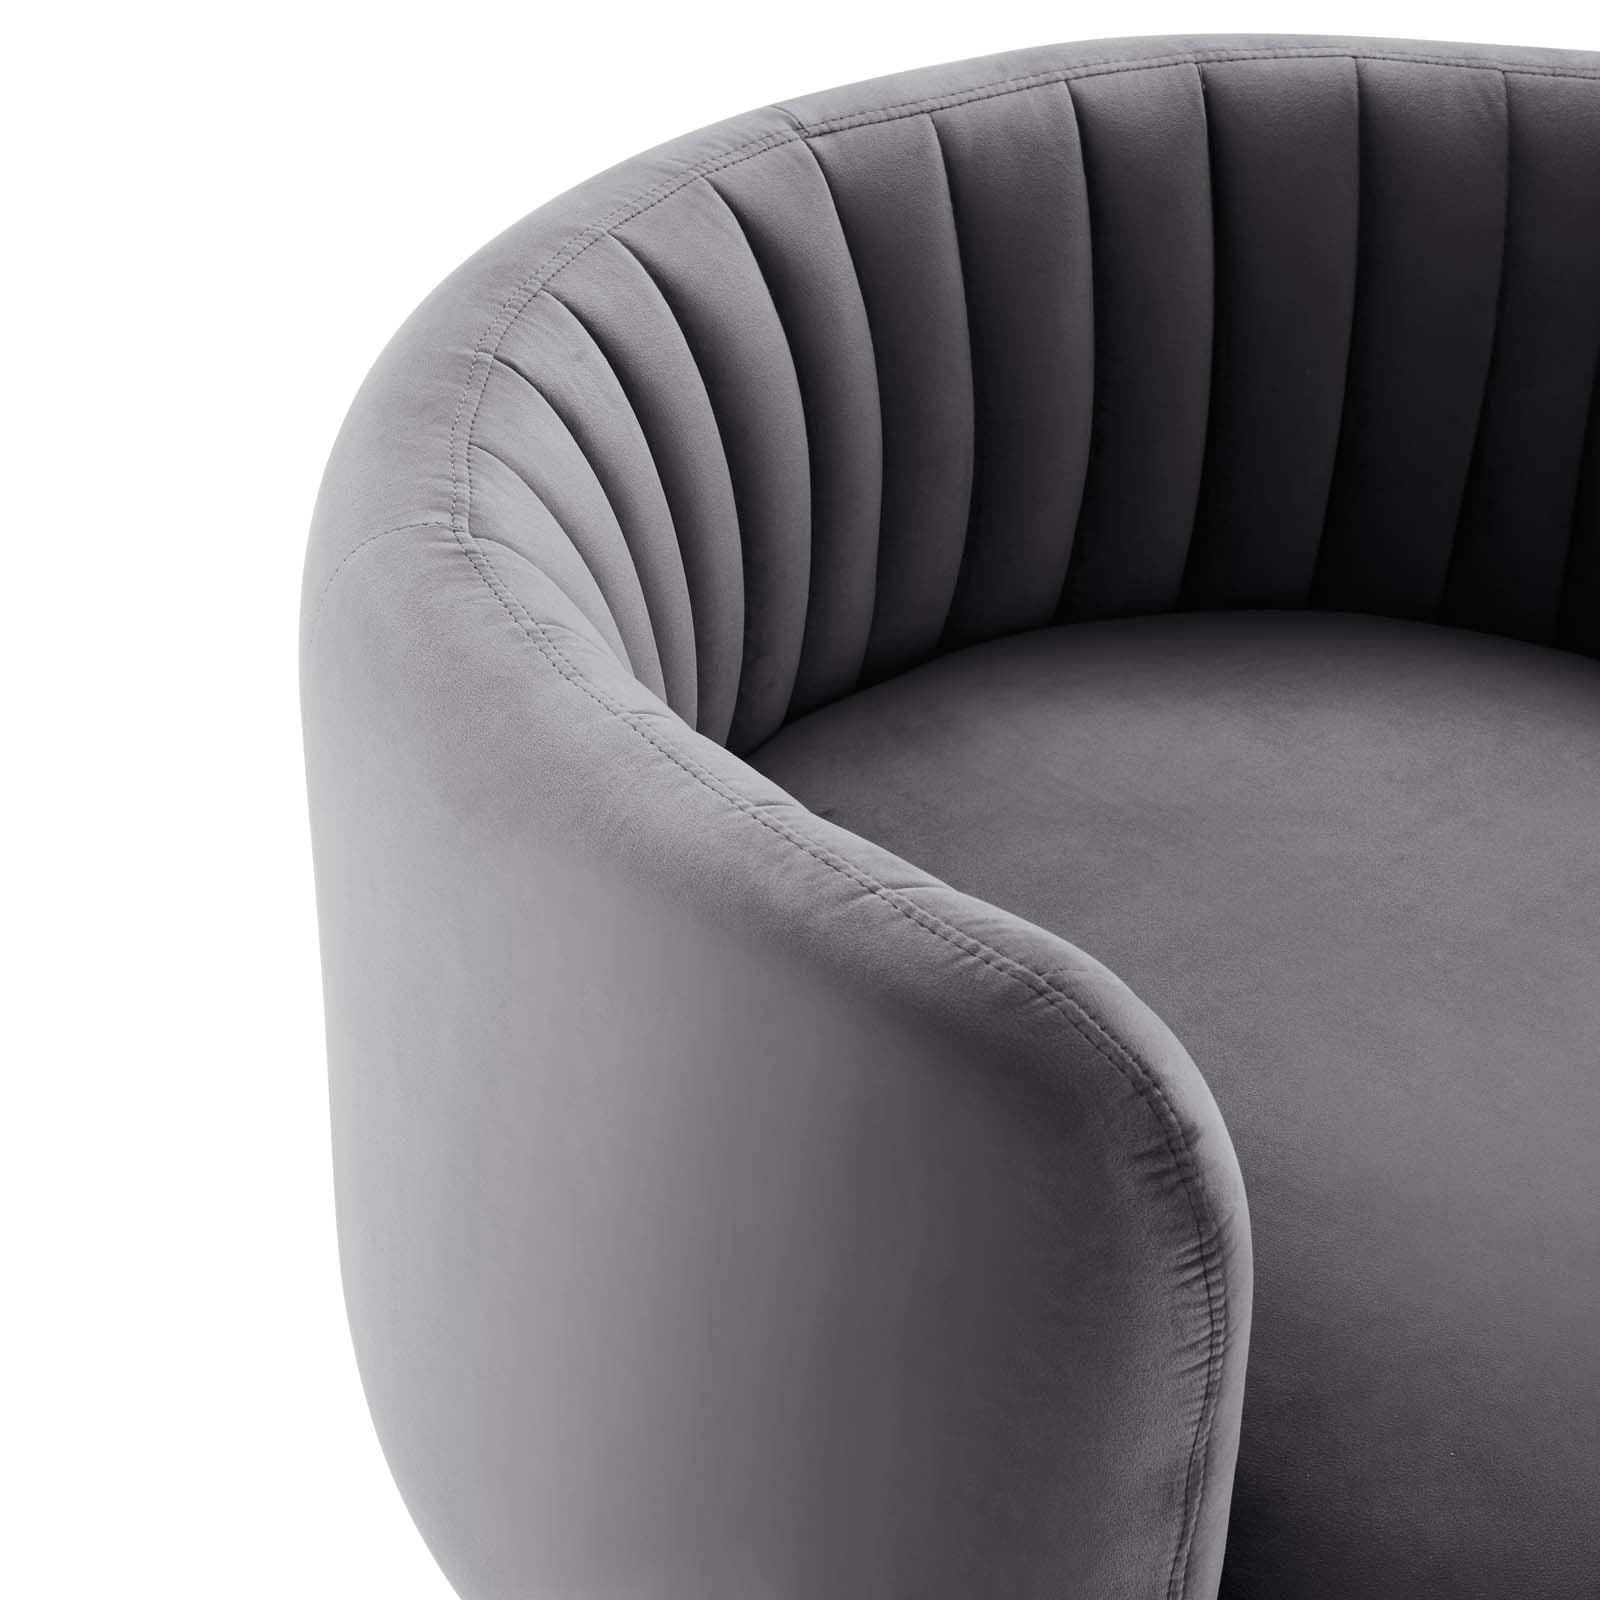 Embrace Tufted Performance Velvet Swivel Chair - East Shore Modern Home Furnishings